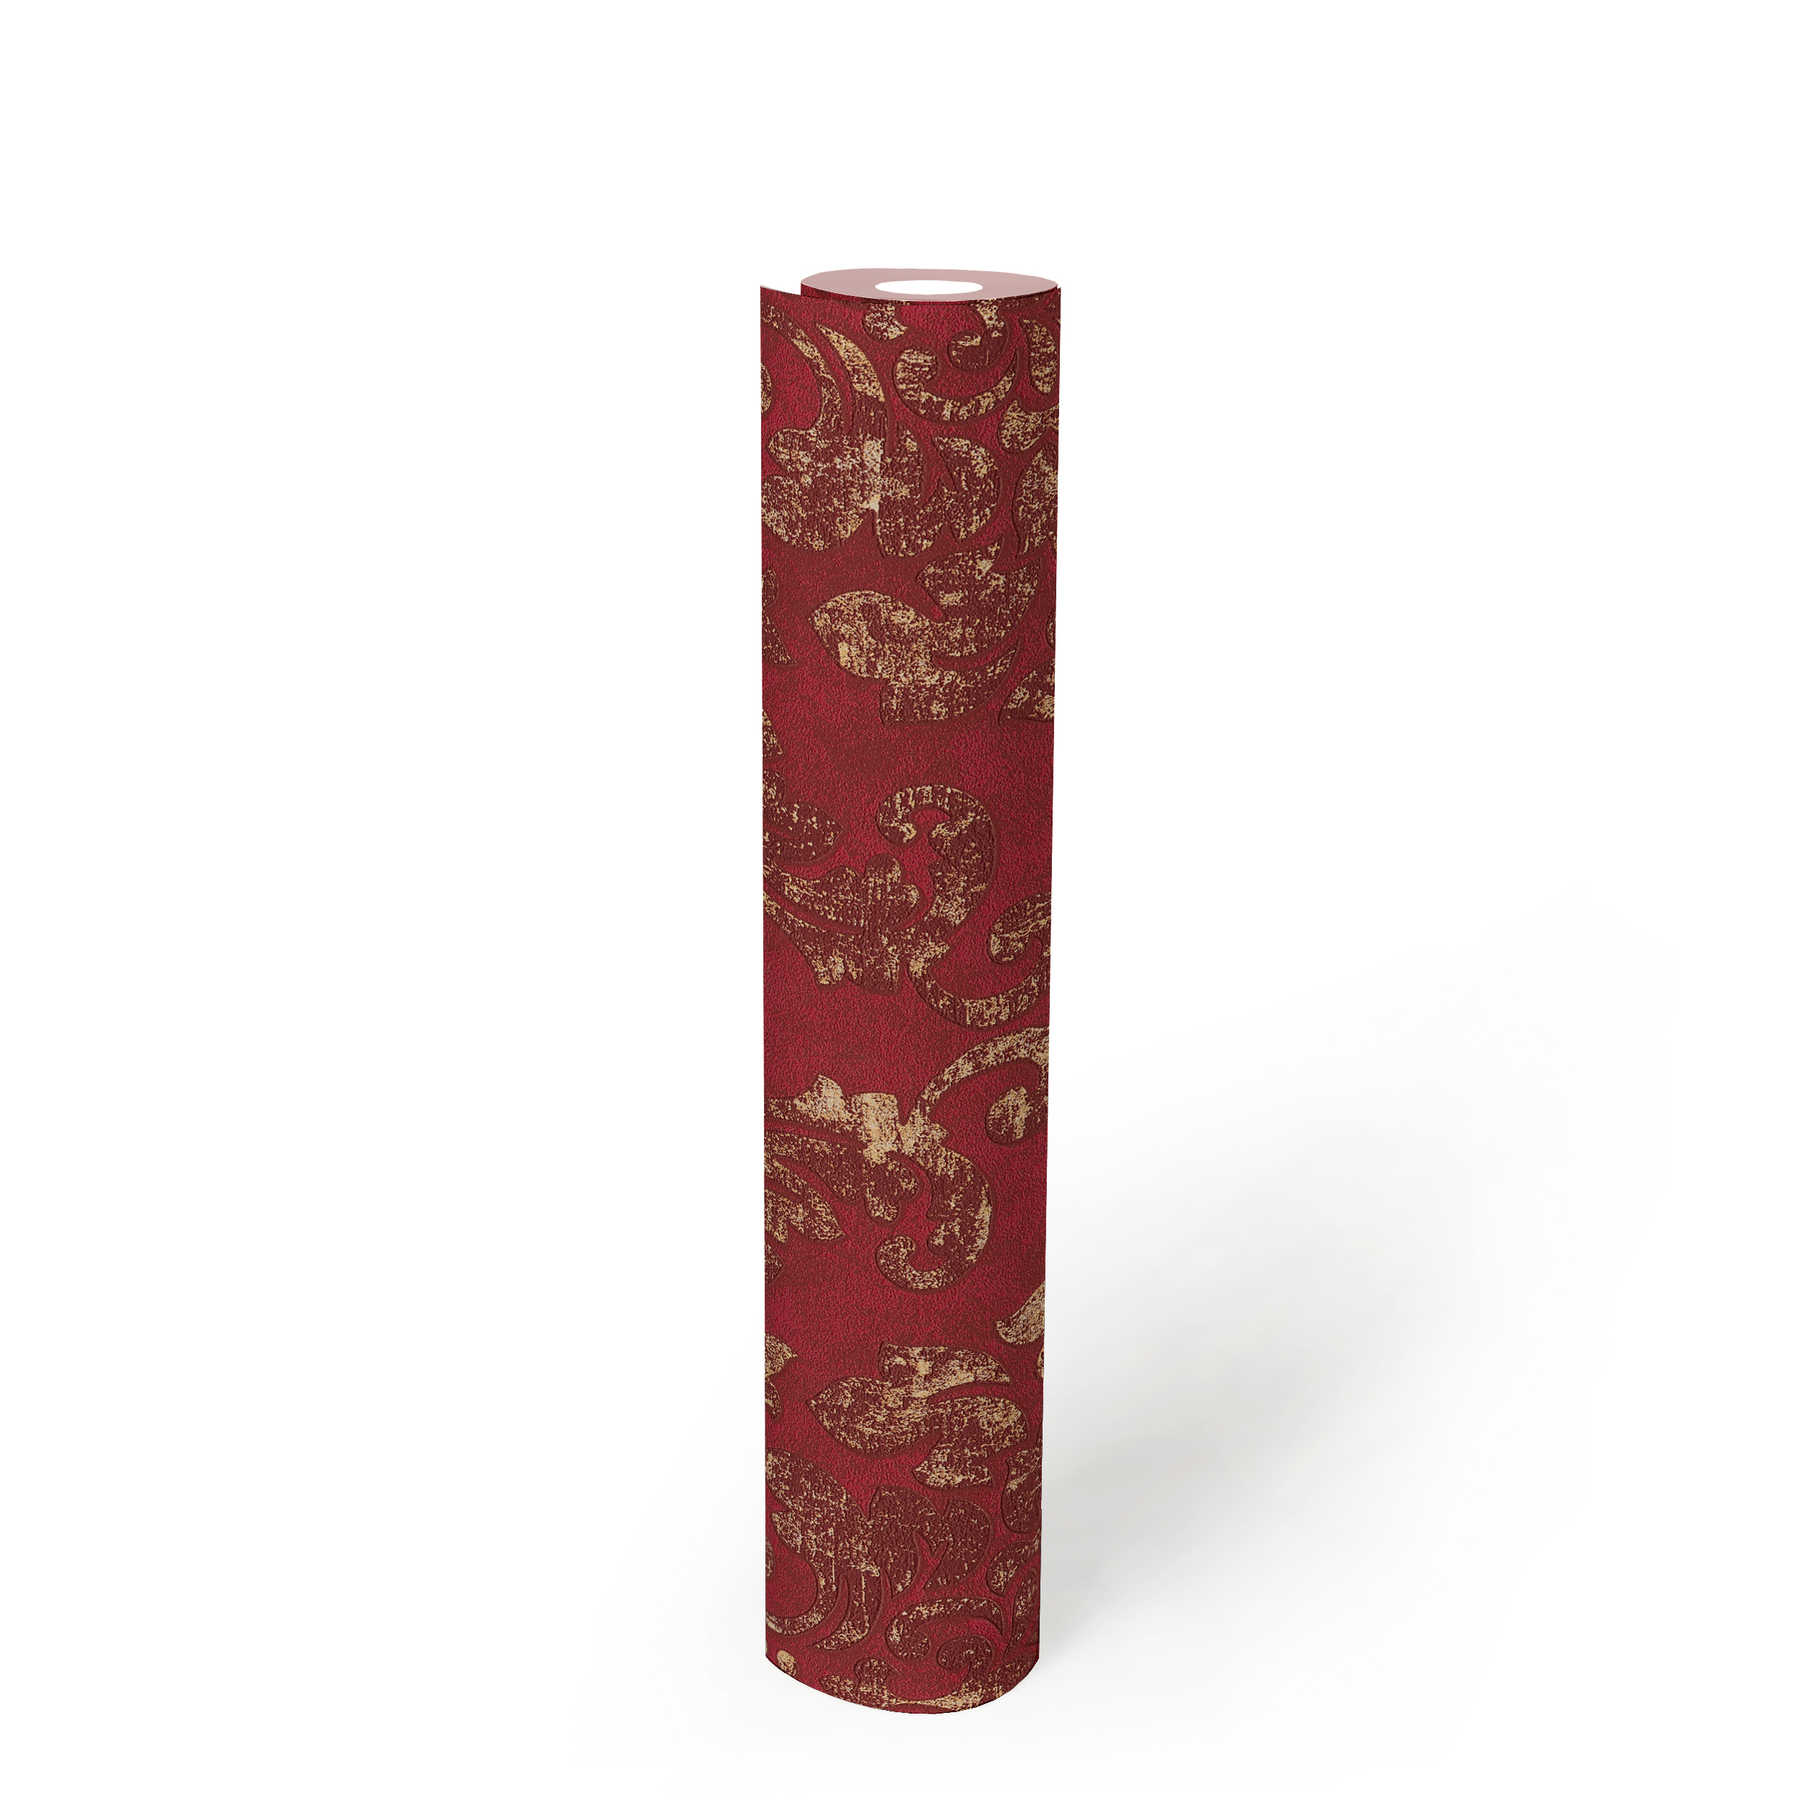             Papier peint baroque avec ornements en look usé - rouge, or
        